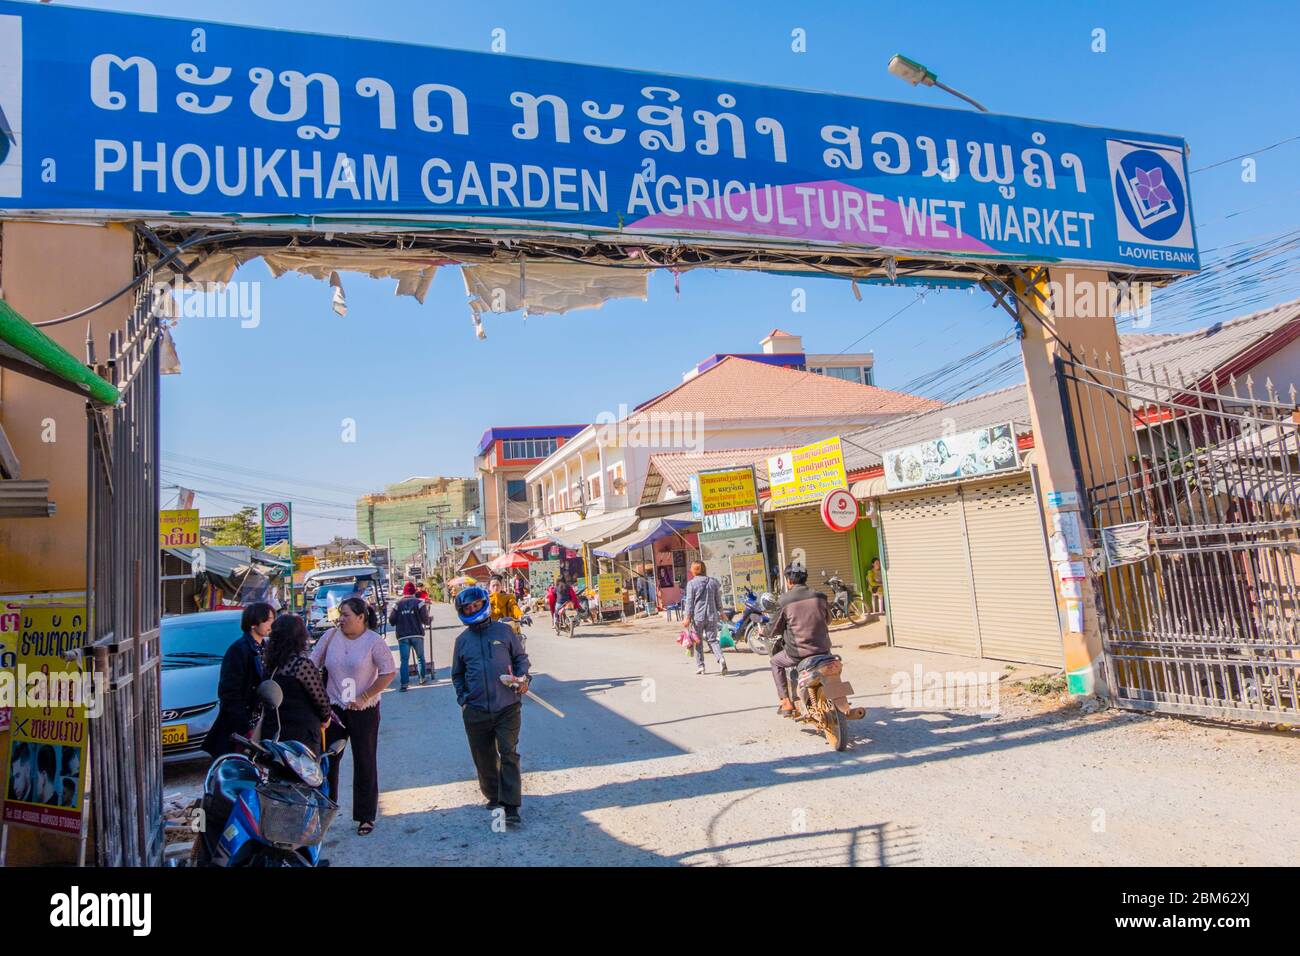 Phoukham garden agriculture wet market, gate, Phonsavan, Xieng Khouang Province, Laos Stock Photo